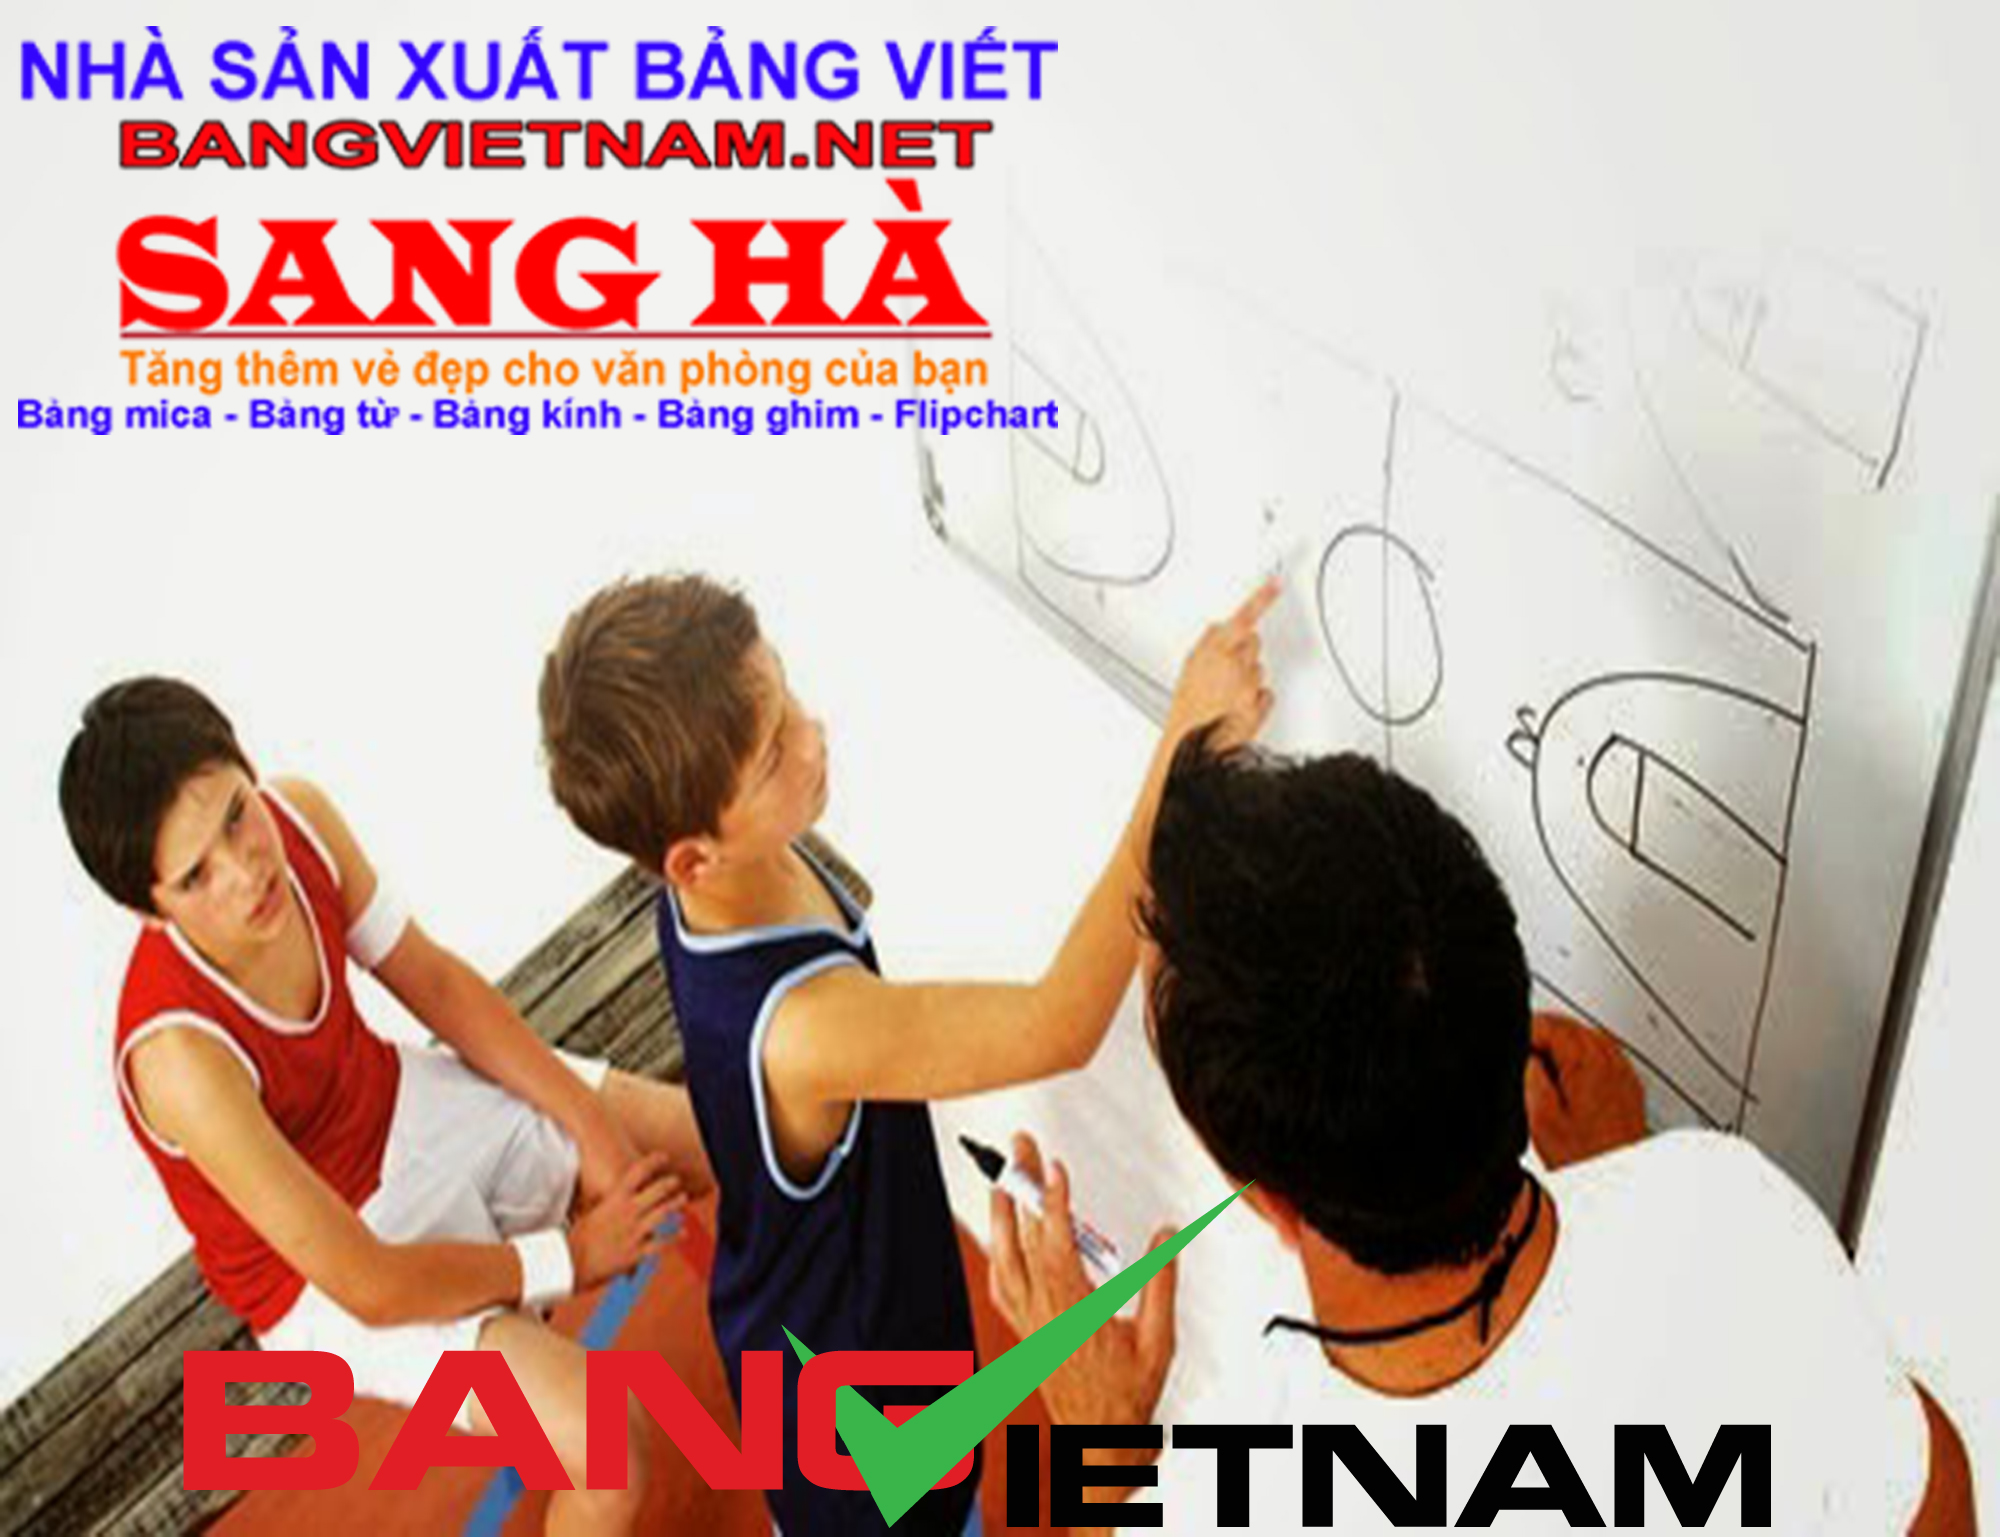 Bảng việt nam - Nhà sản xuất bảng viết tại Việt Nam